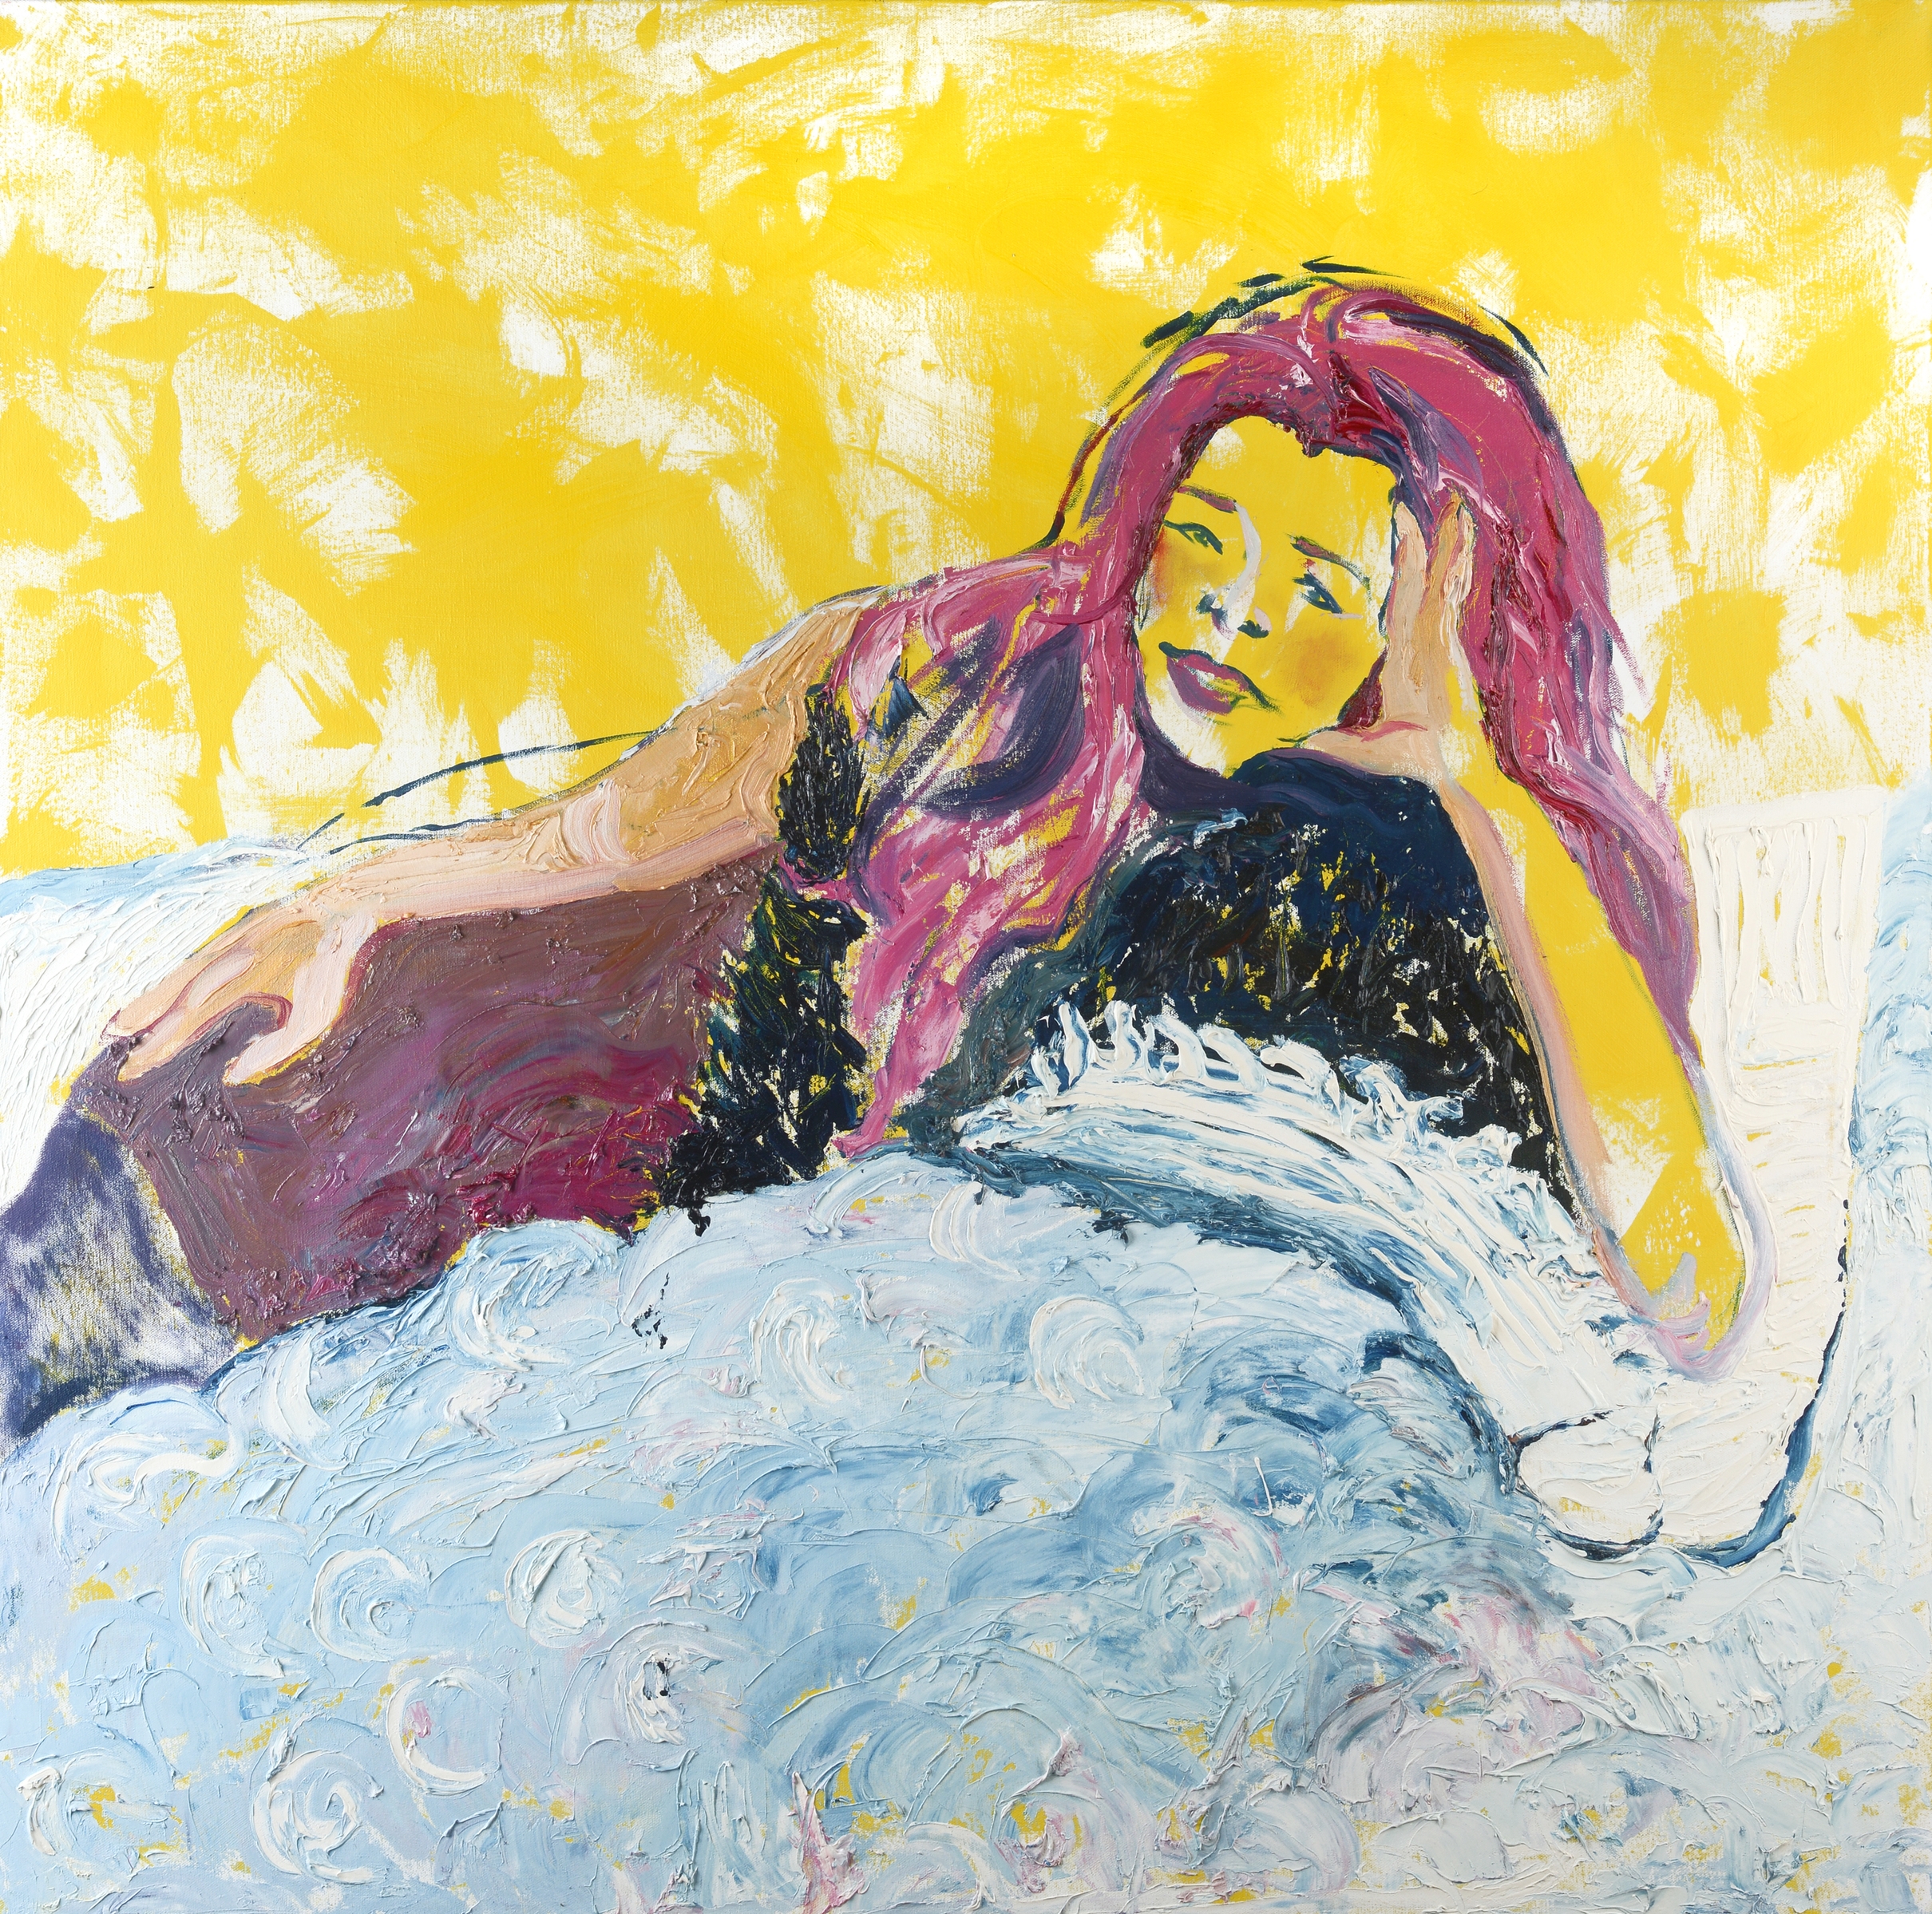 Liz. Oil and acrylic on canvas. 2015.